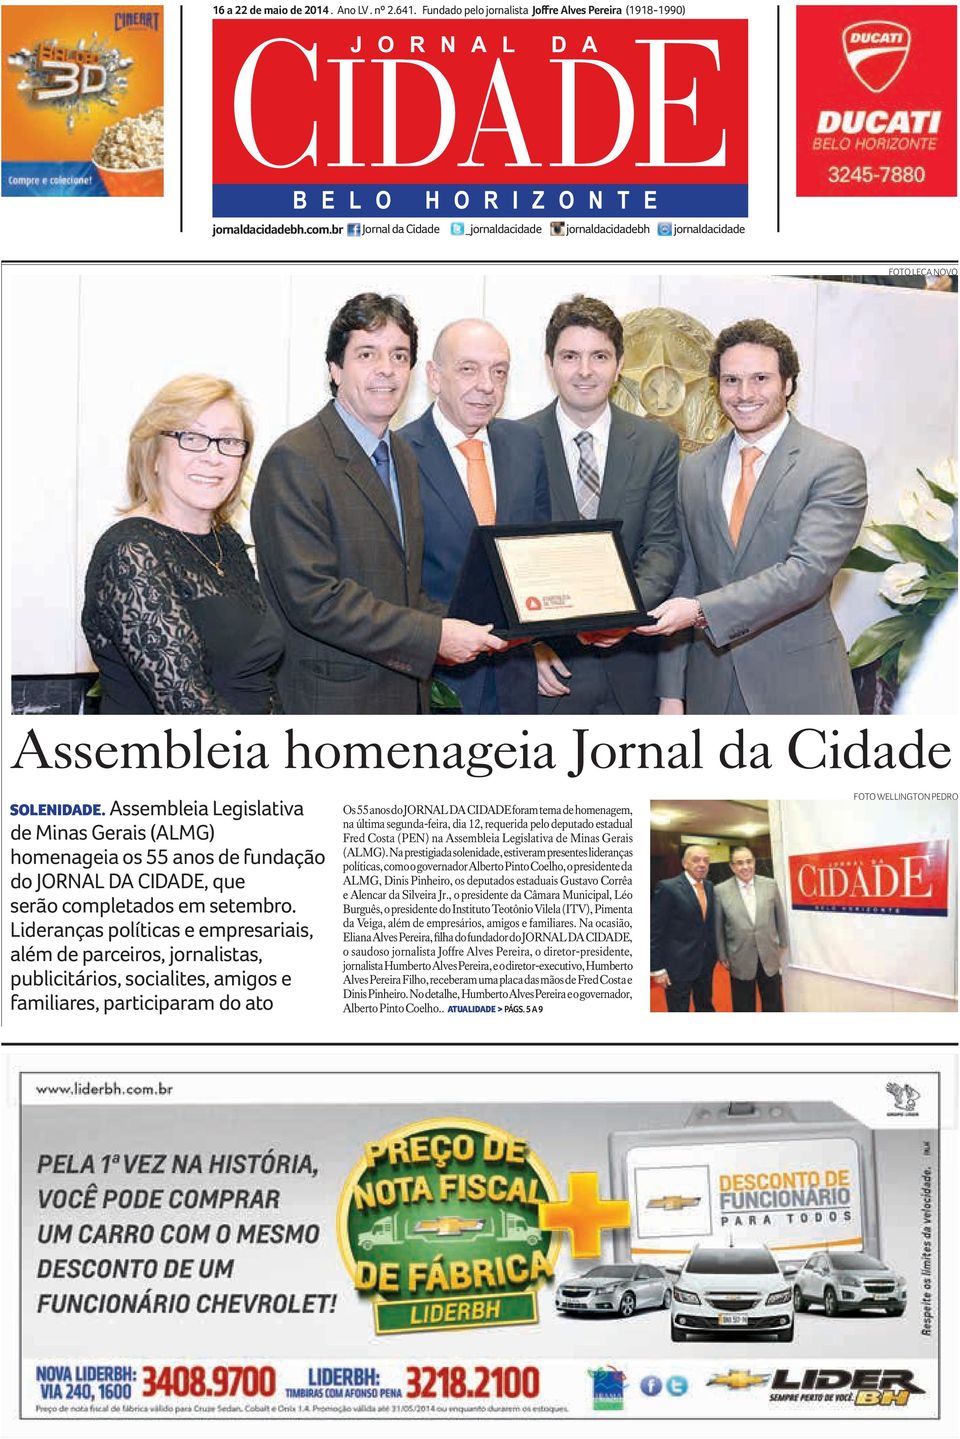 Assembleia Legislativa de Minas Gerais (ALMG) homenageia os 55 anos de fundação do JORNAL DA CIDADE, que serão completados em setembro.